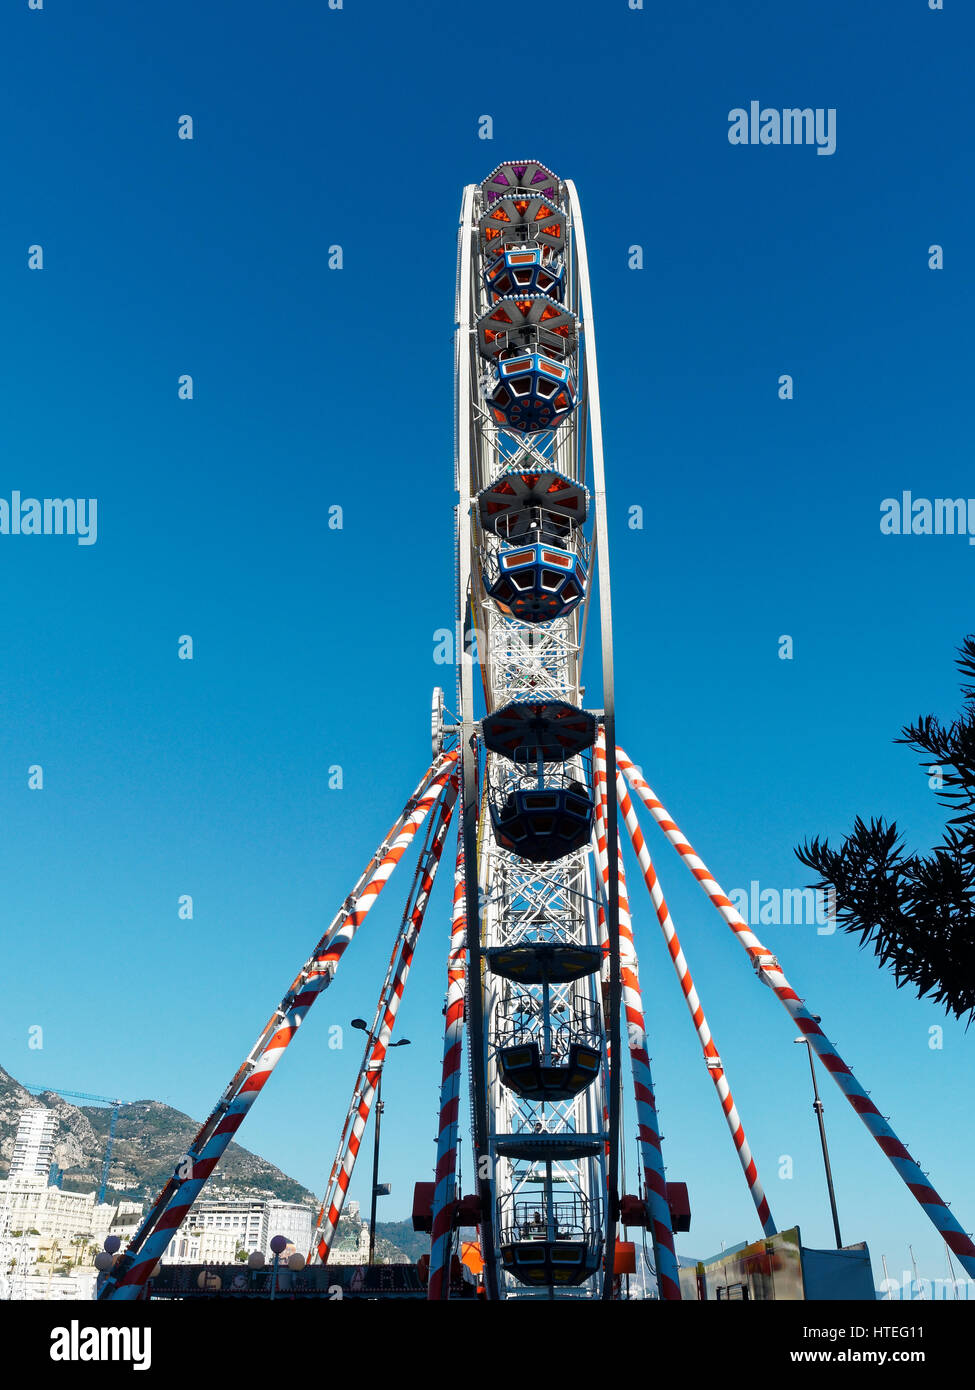 Ferris wheel and ice rink at Port Hercule, behind Hôtel Hermitage Monte-Carlo, Monaco, Mediterranean Stock Photo